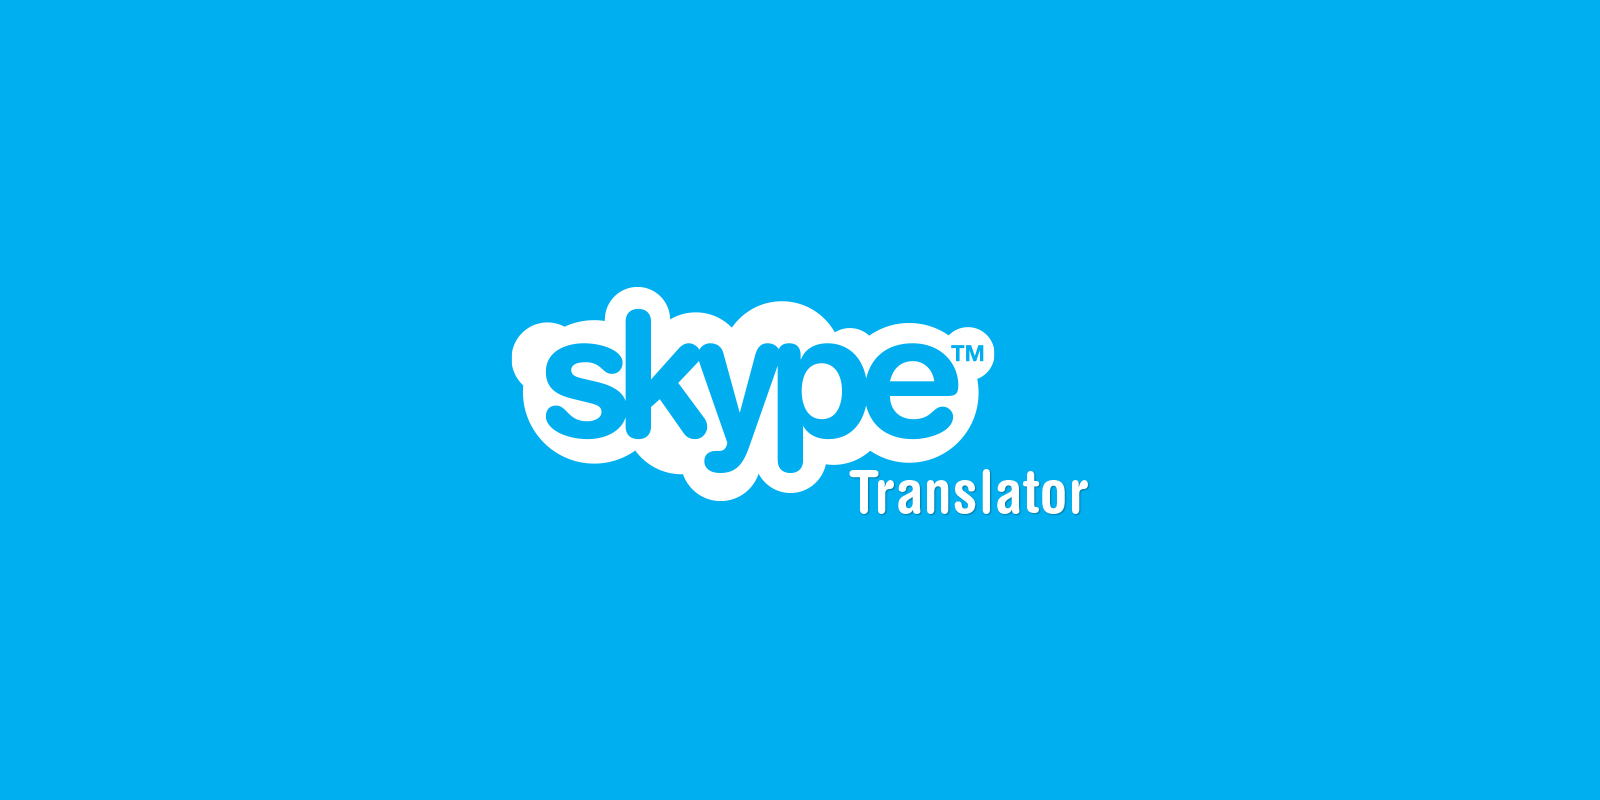 Skype translator feature